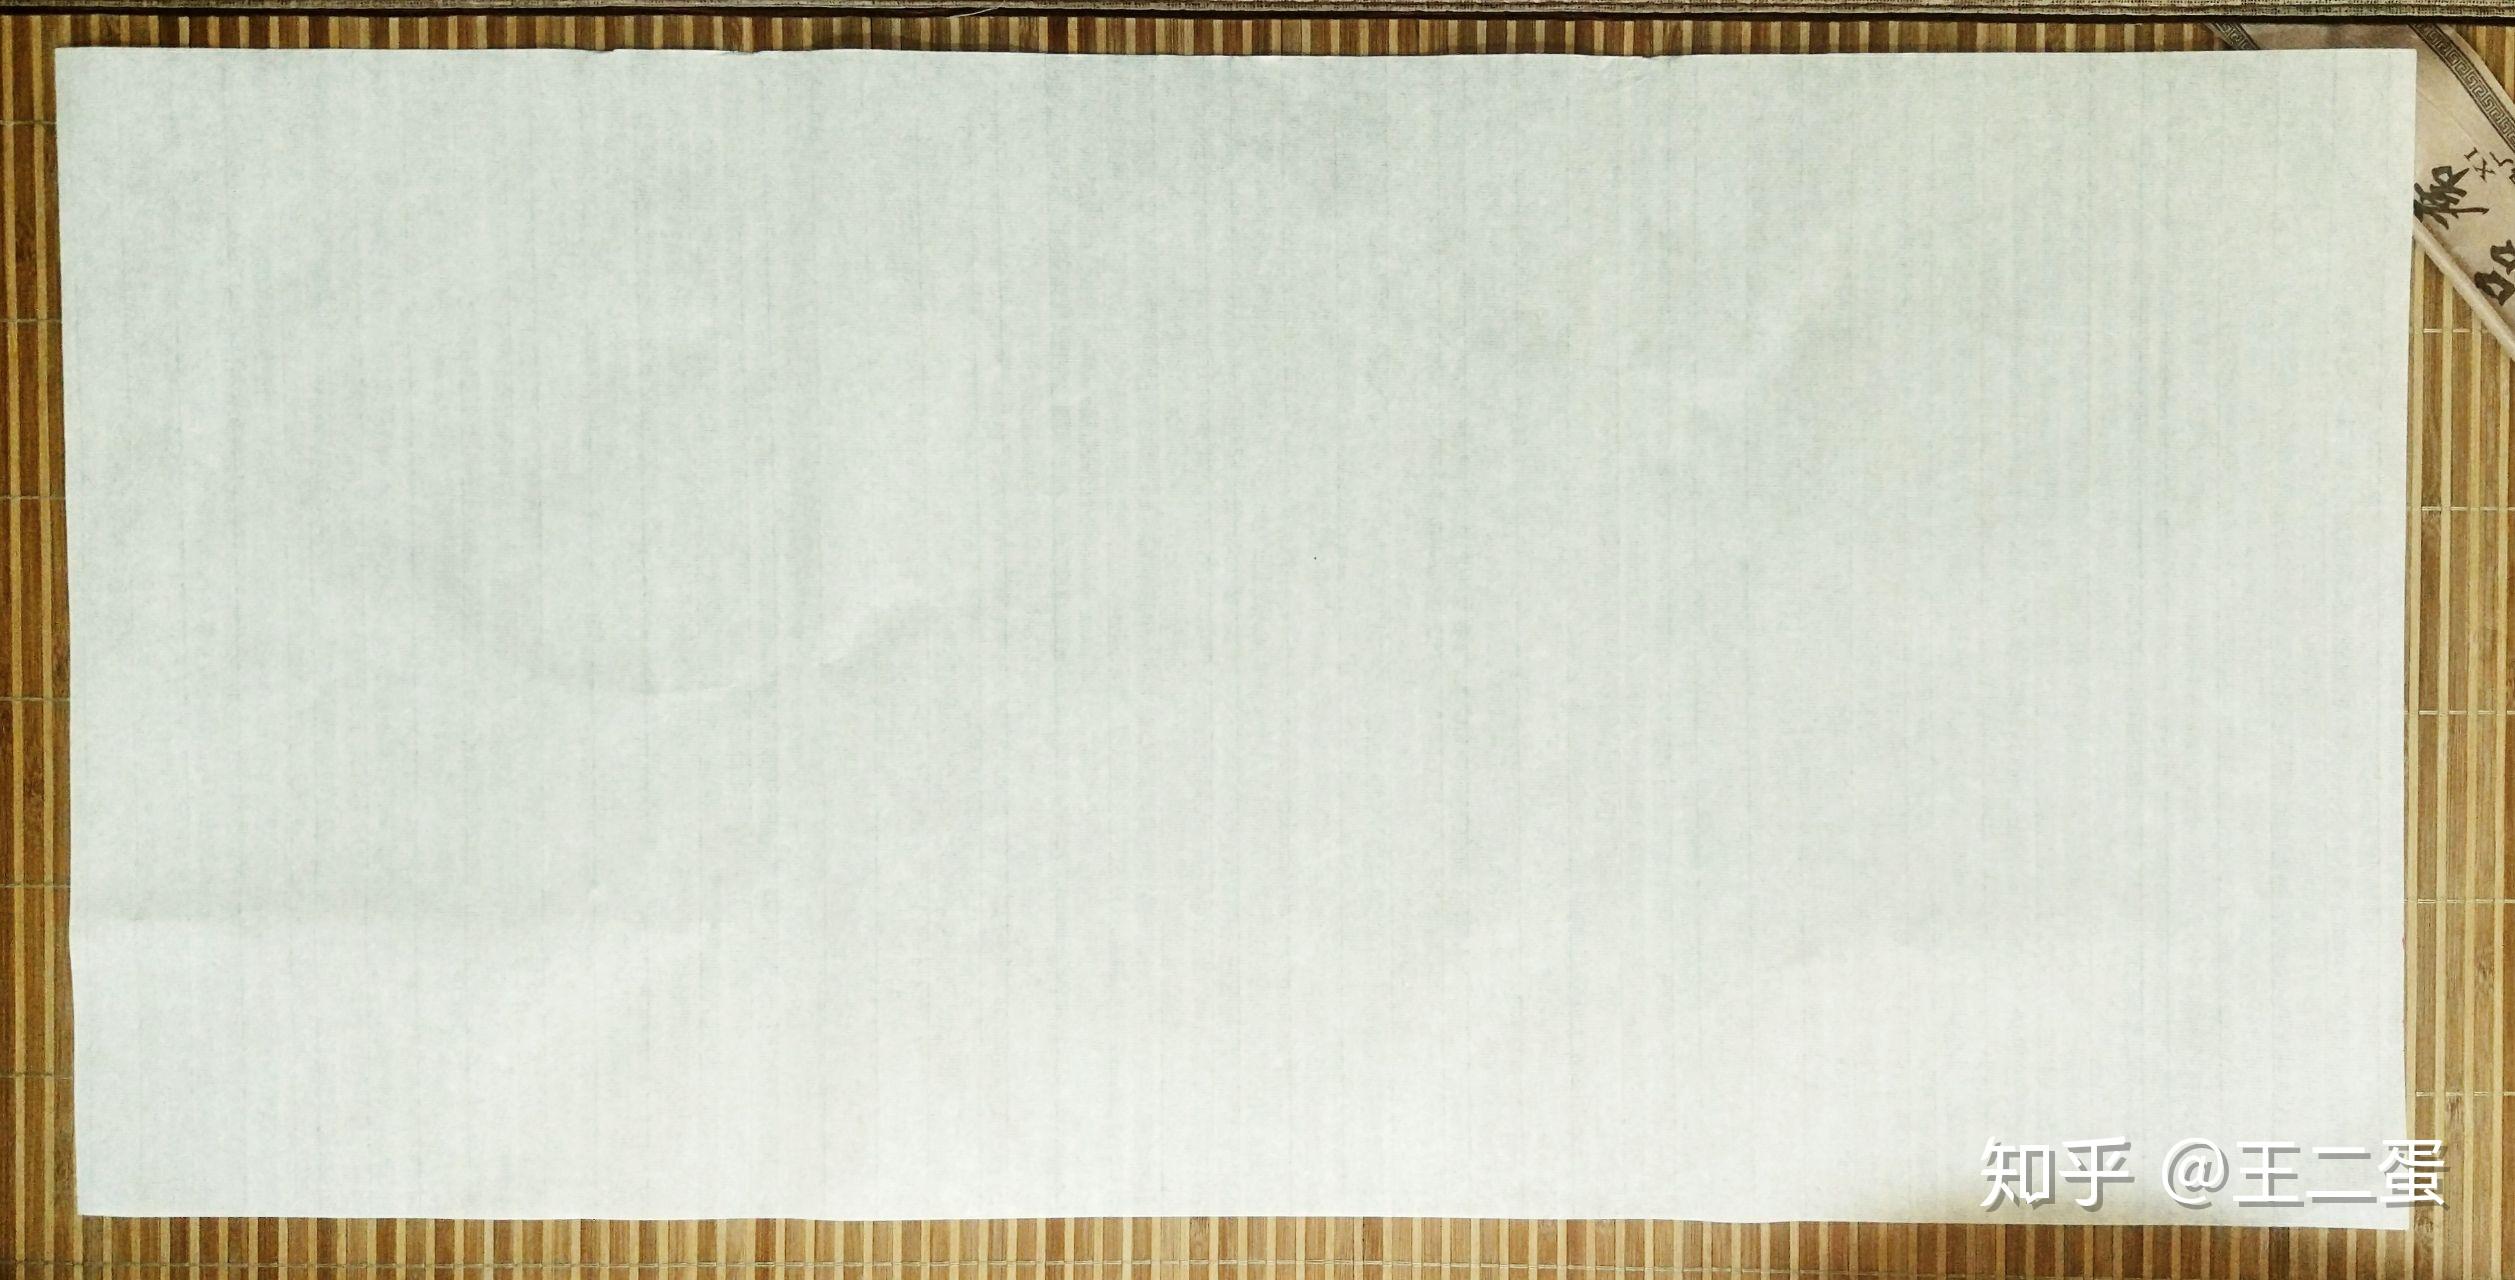 空白宣纸–––叠完格子后可以用来练字,或者用于书法创作宣纸的常用